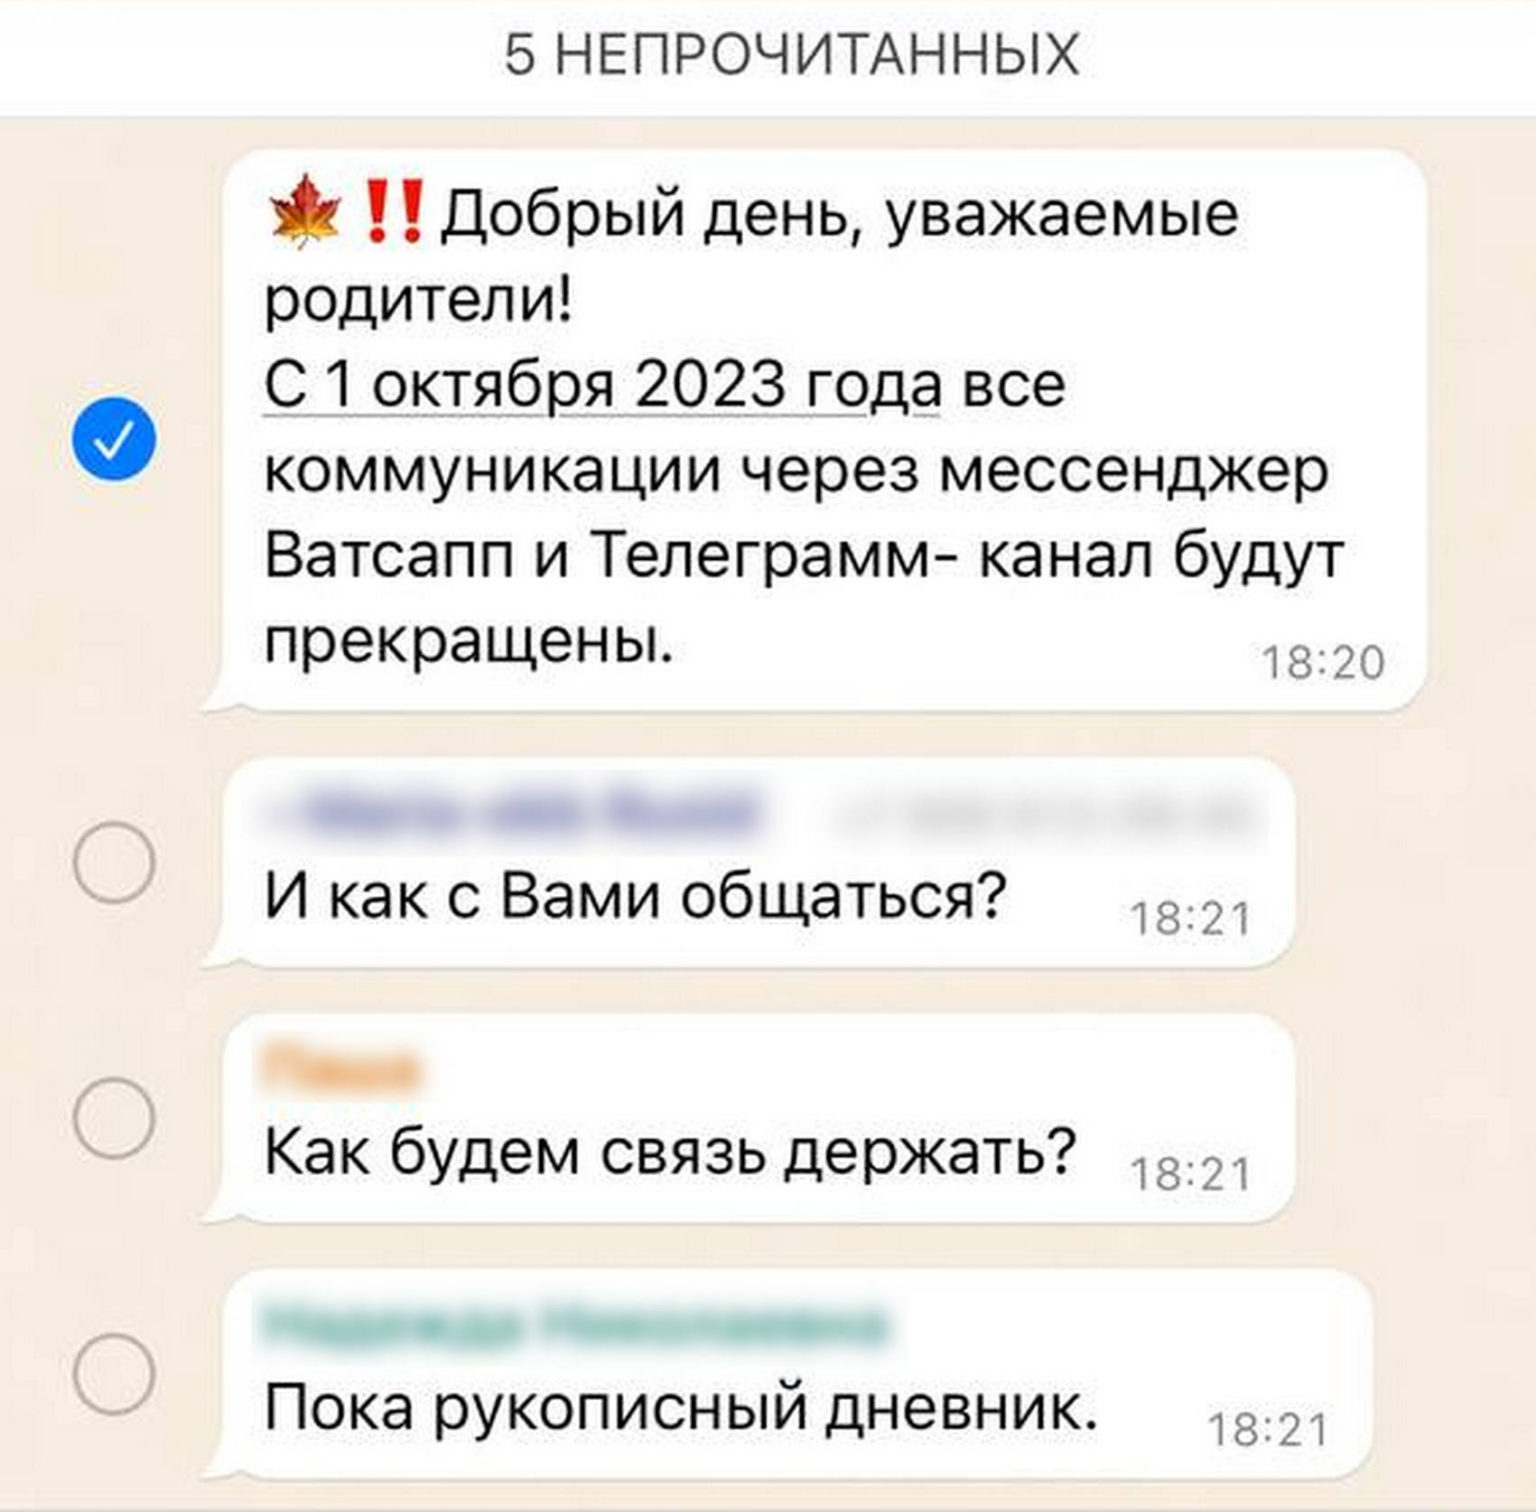 Перевести телеграмм на русский самсунг фото 34